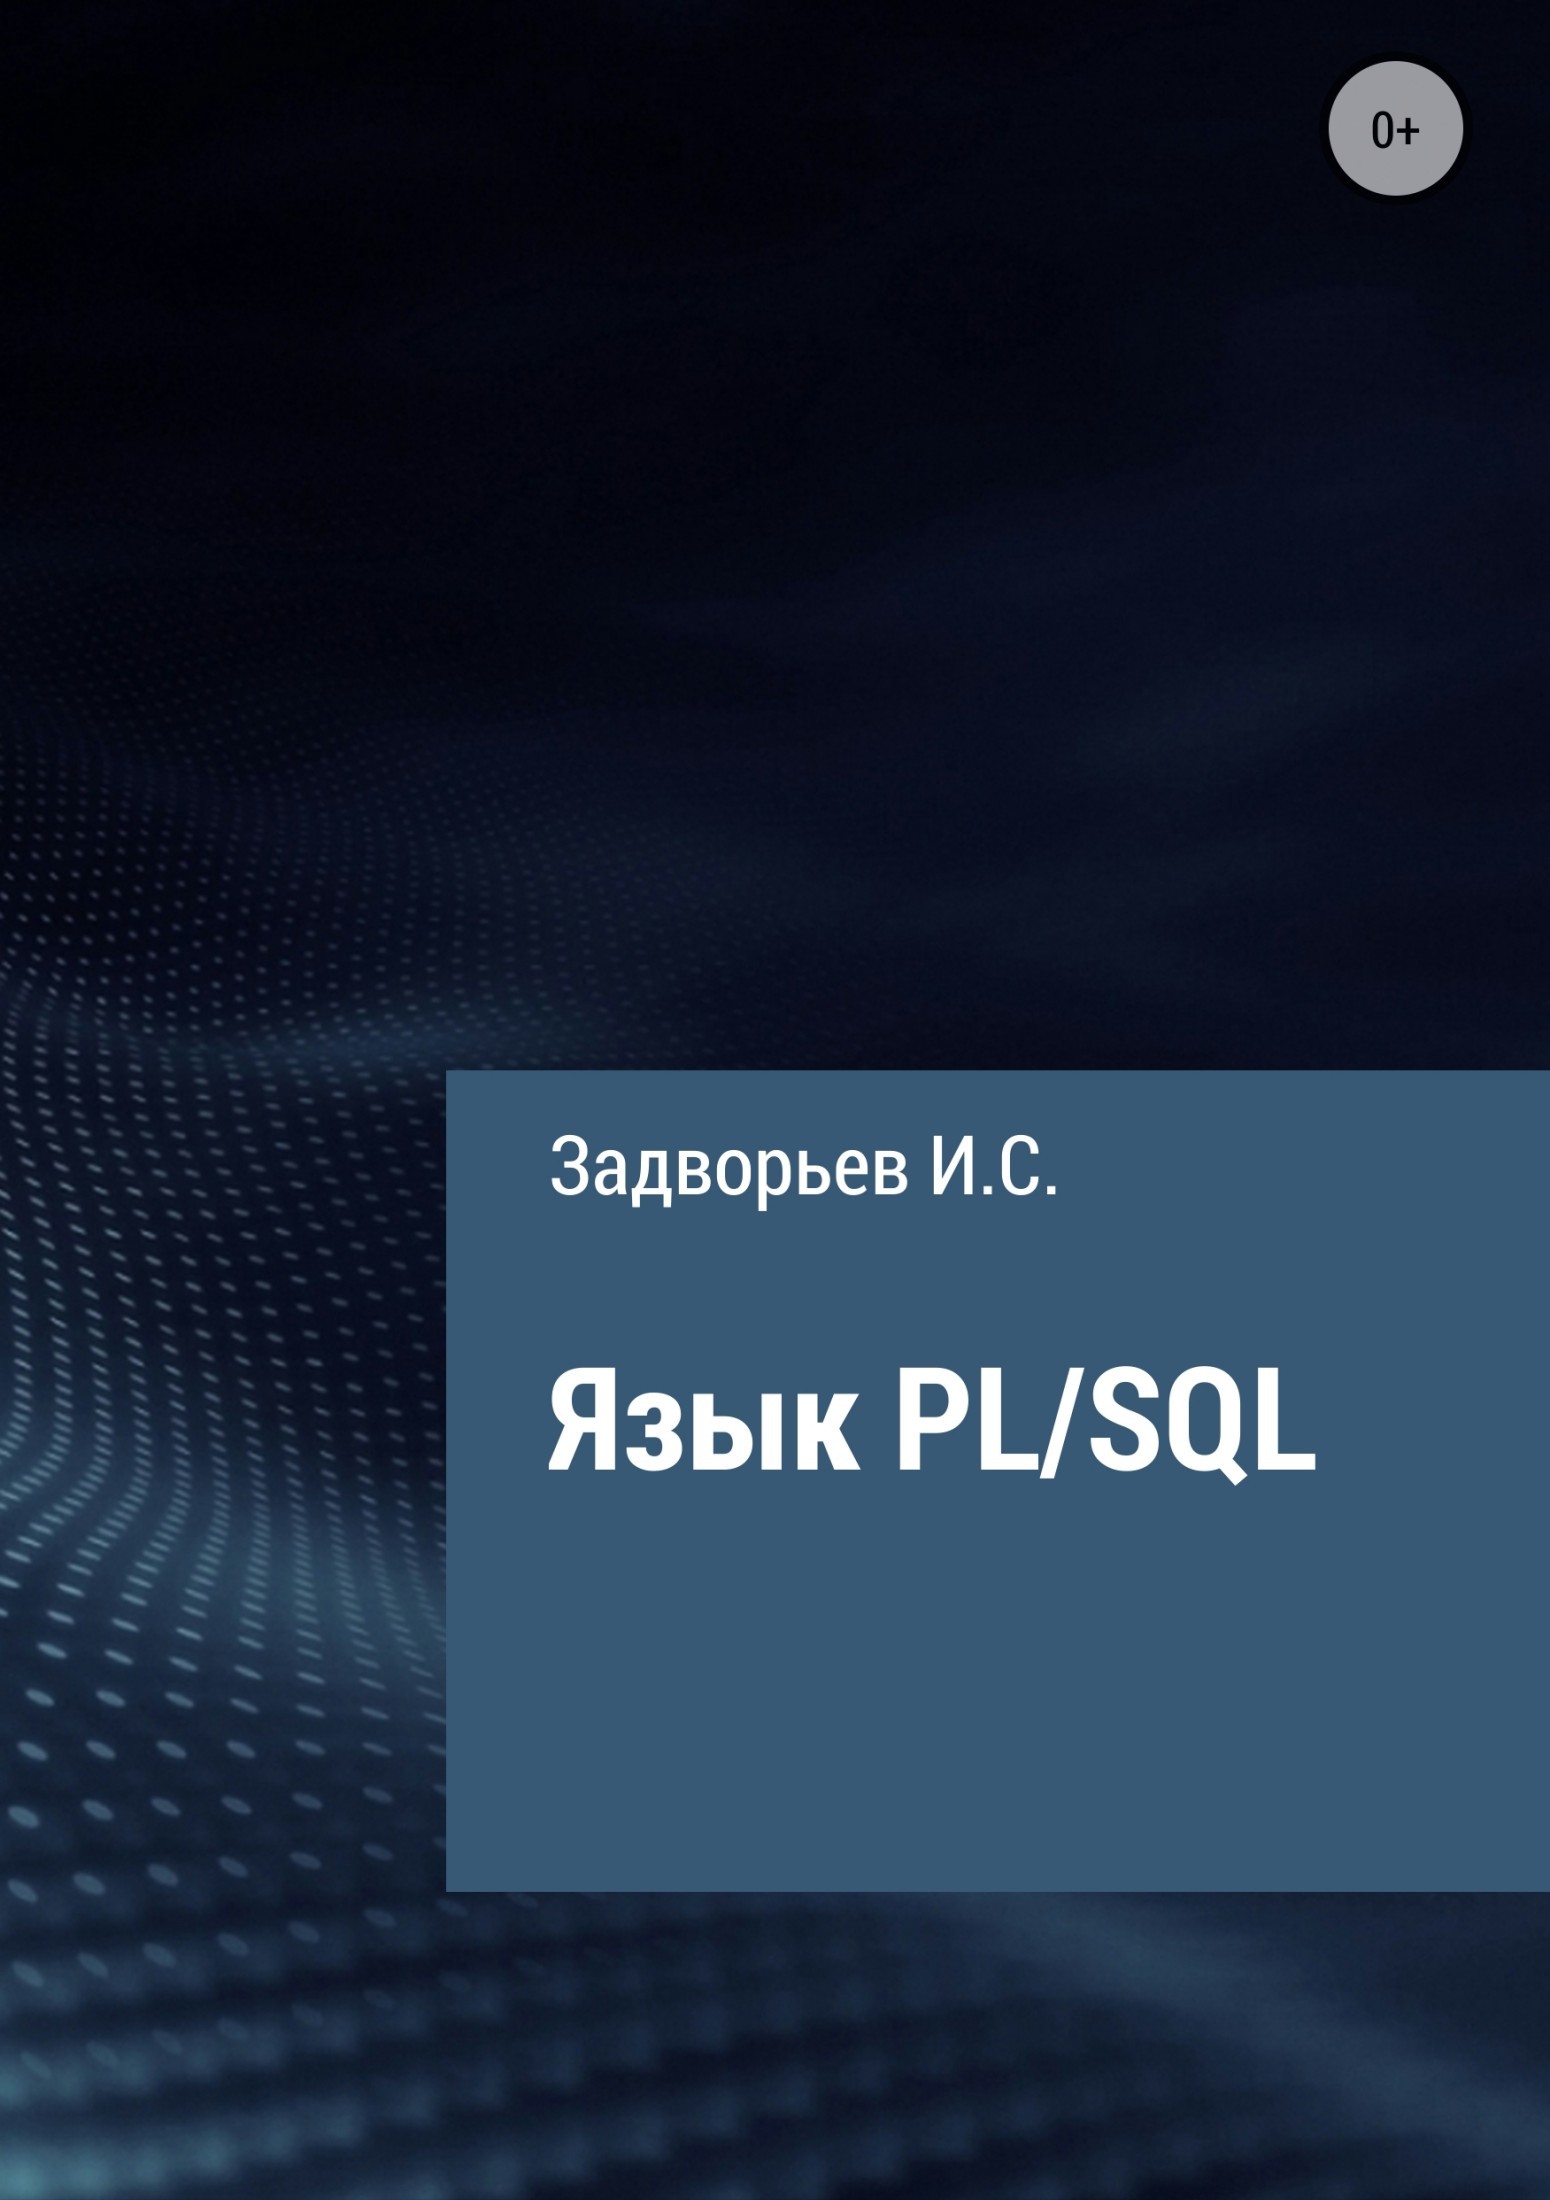 Книга Язык PL/SQL из серии , созданная Иван Задворьев, может относится к жанру Базы данных. Стоимость электронной книги Язык PL/SQL с идентификатором 31739022 составляет 0 руб.